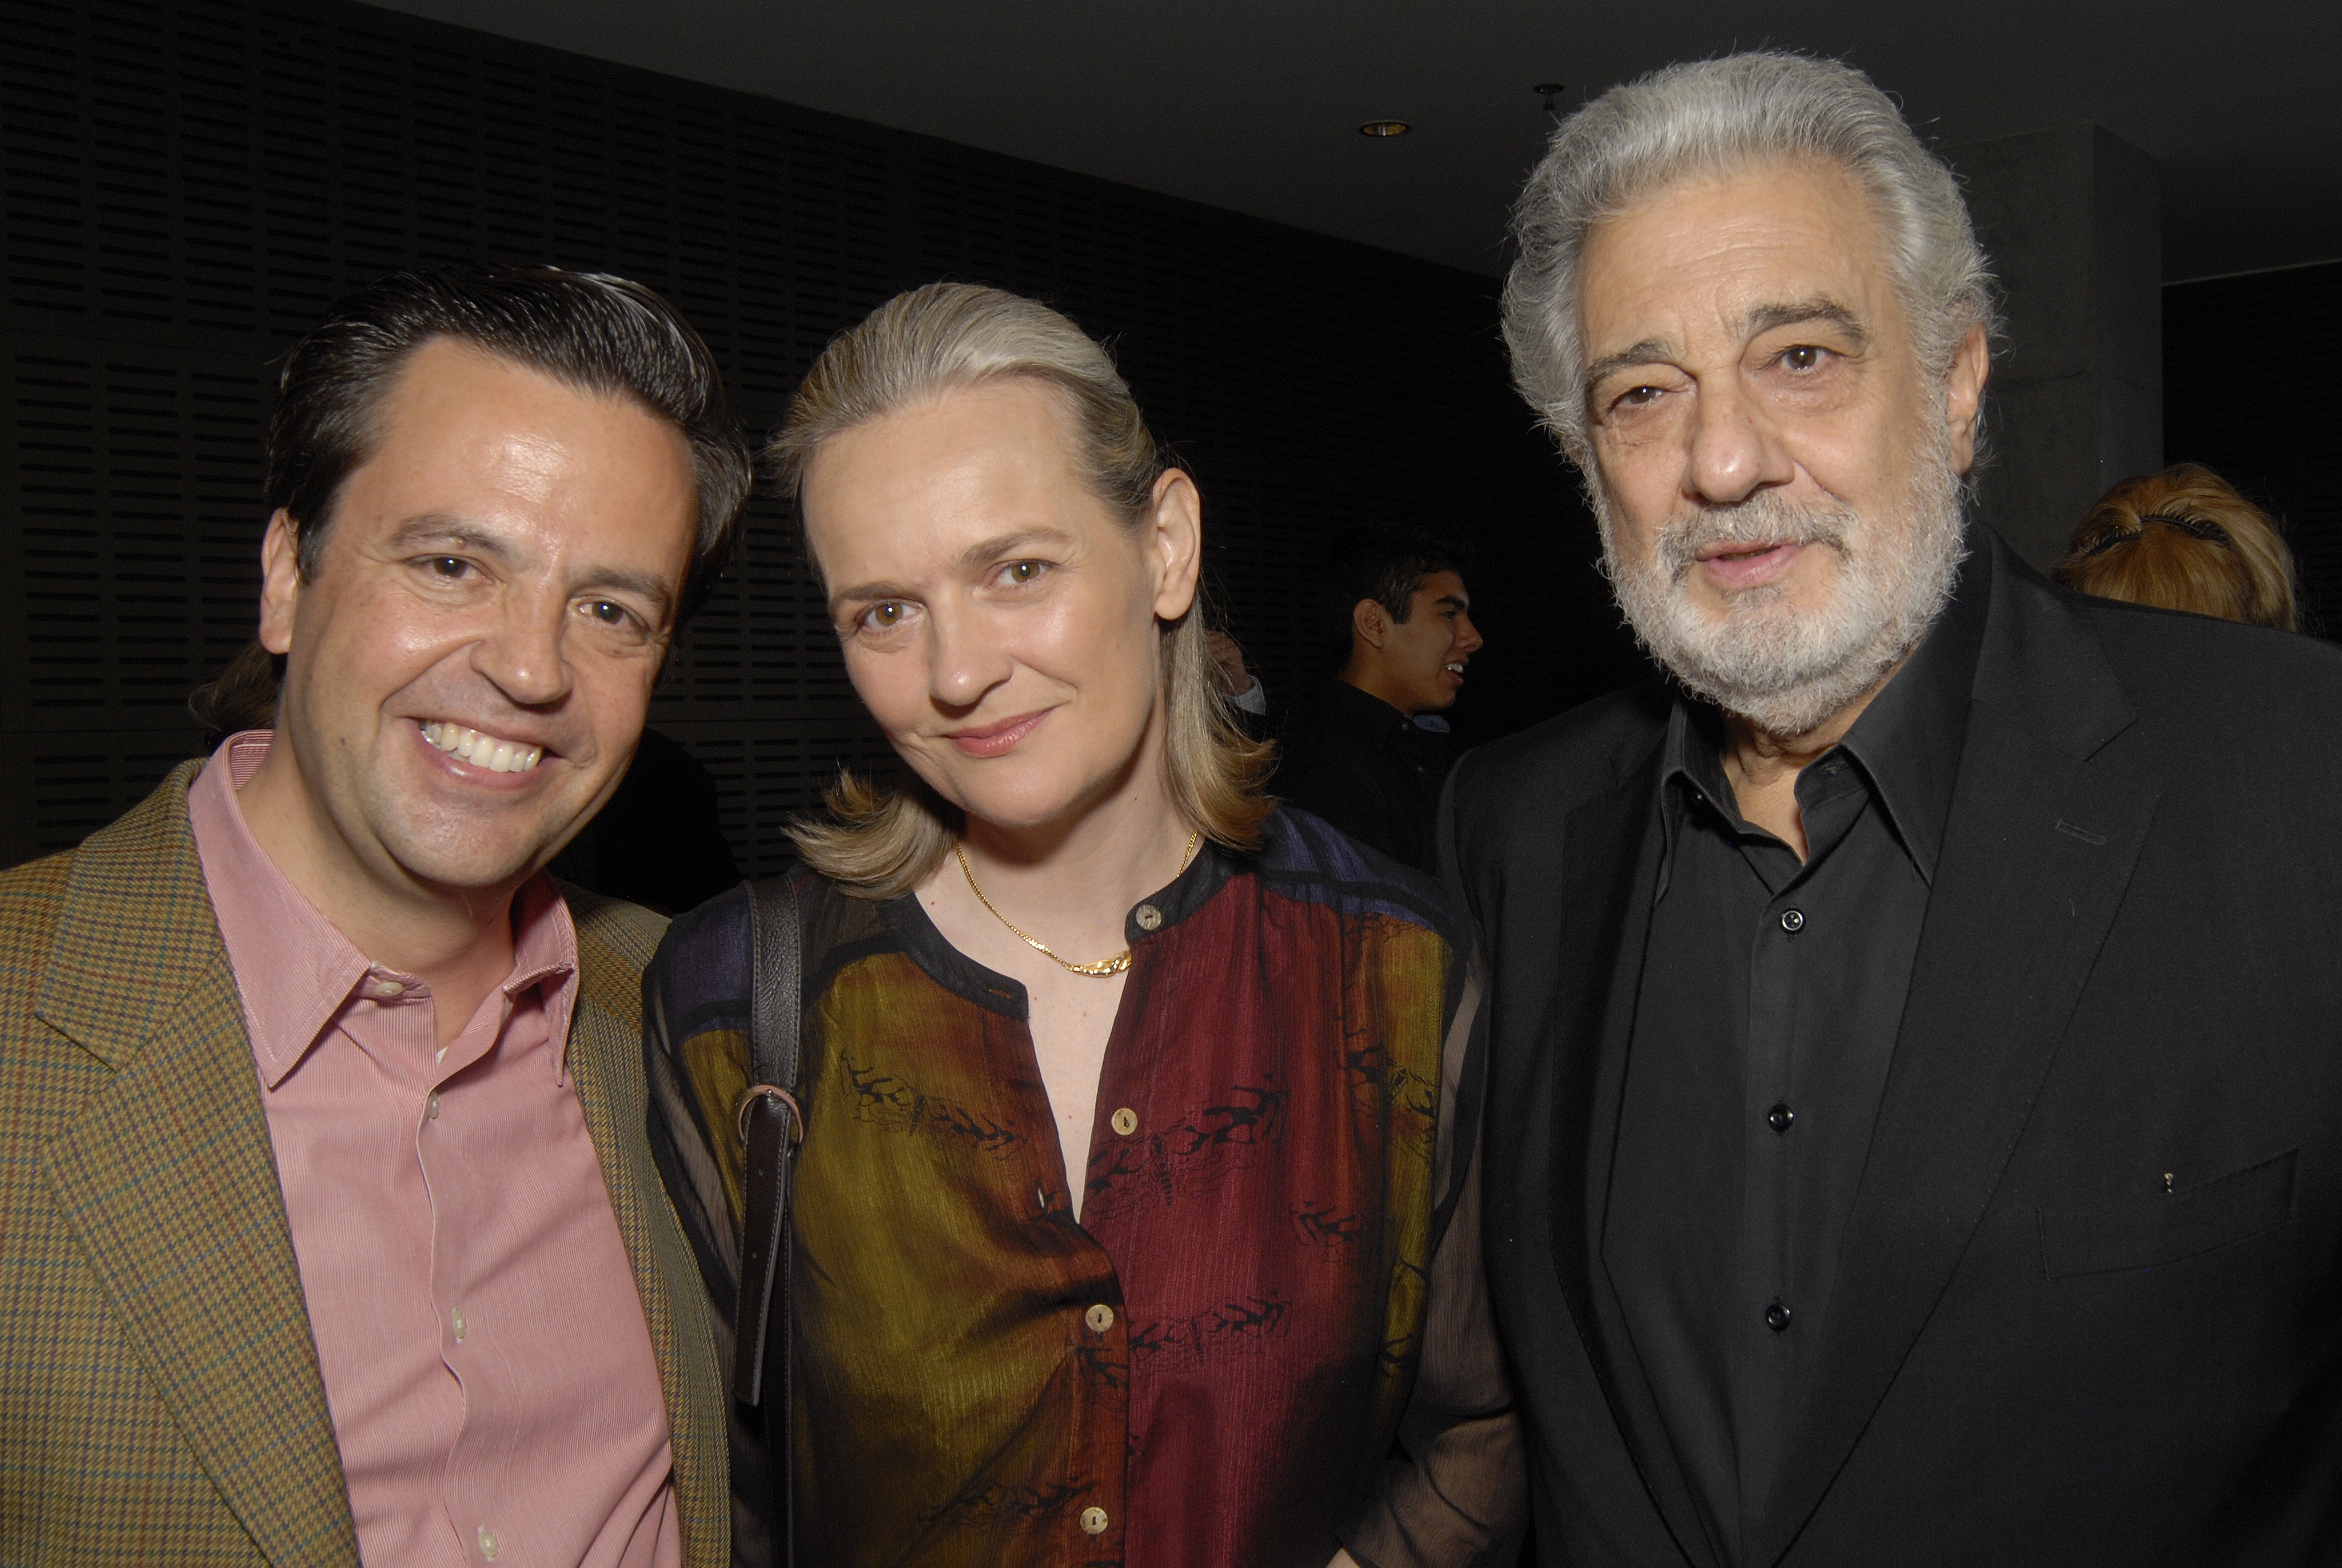 Salvador Carrasco, Andrea Sanderson, and Plácido Domingo; Santa Monica, CA; June 3, 2013